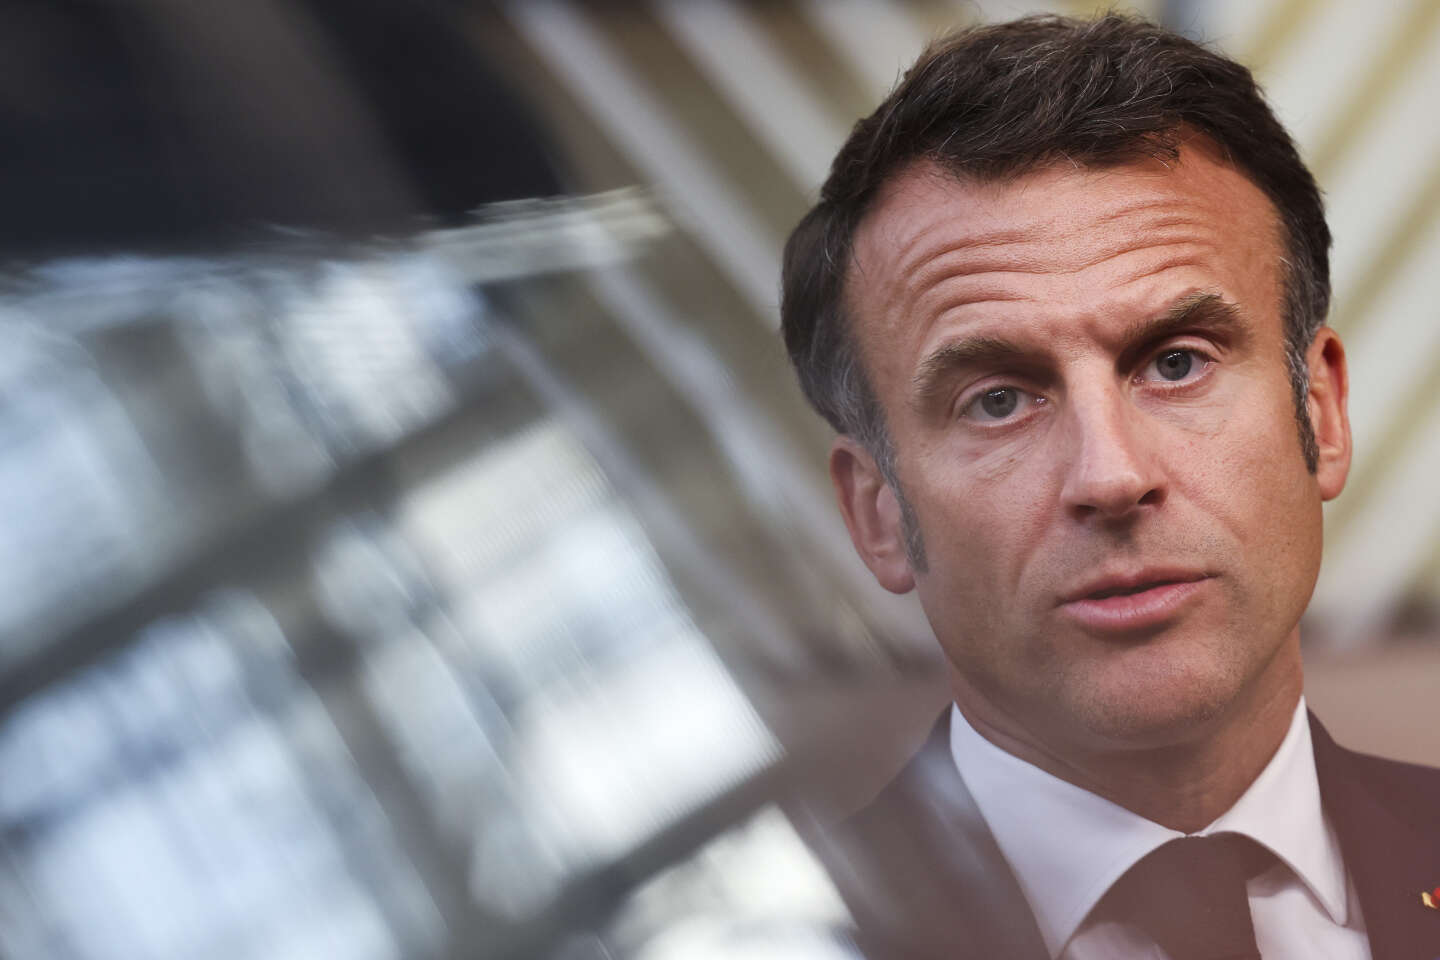 Emmanuel Macron hoopt dat “verschillen tot zwijgen kunnen worden gebracht uit respect voor iedereen.”